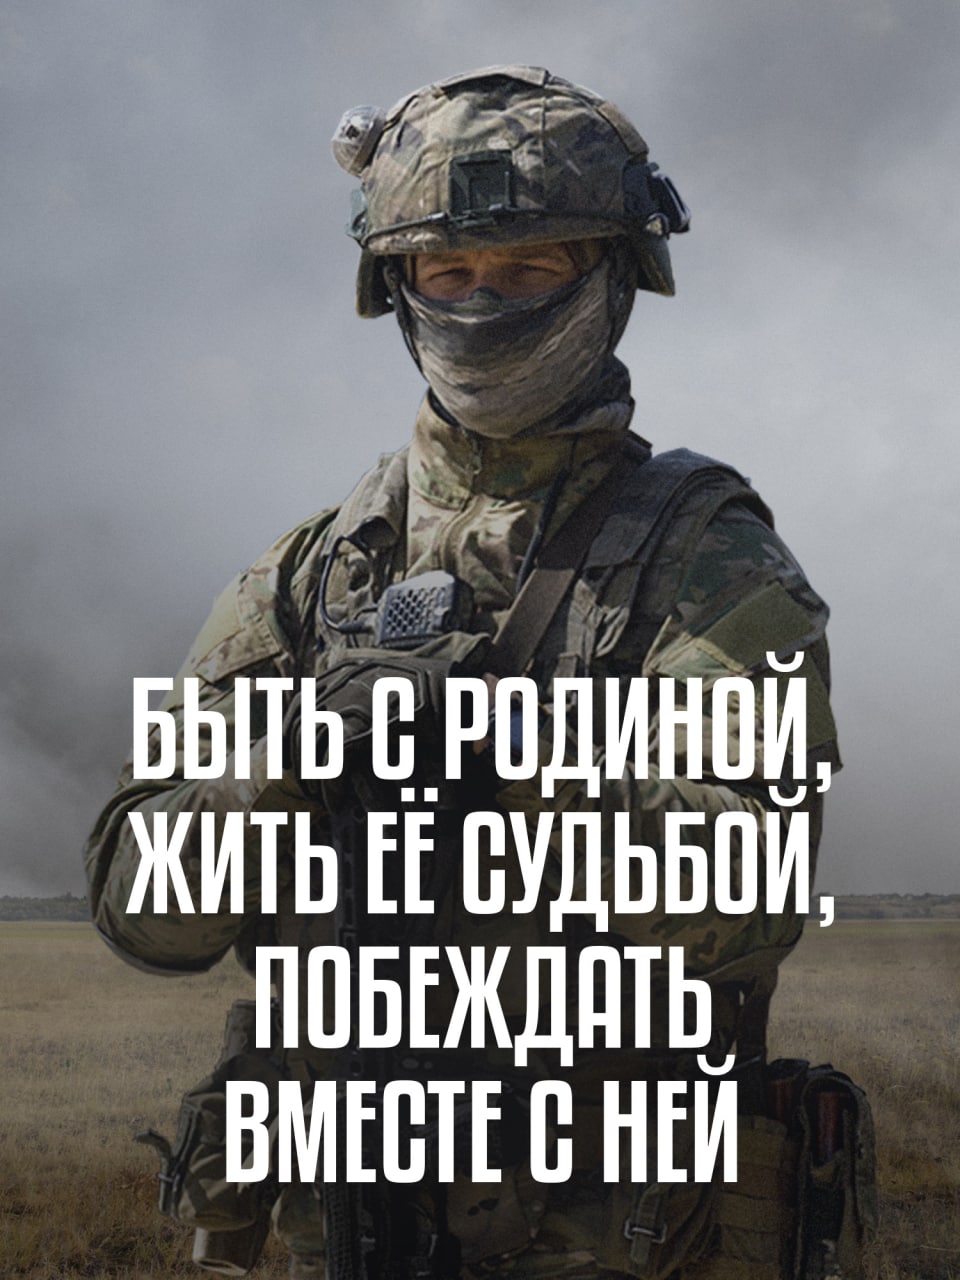 В Иркутской области продолжается набор на контрактную военную службу